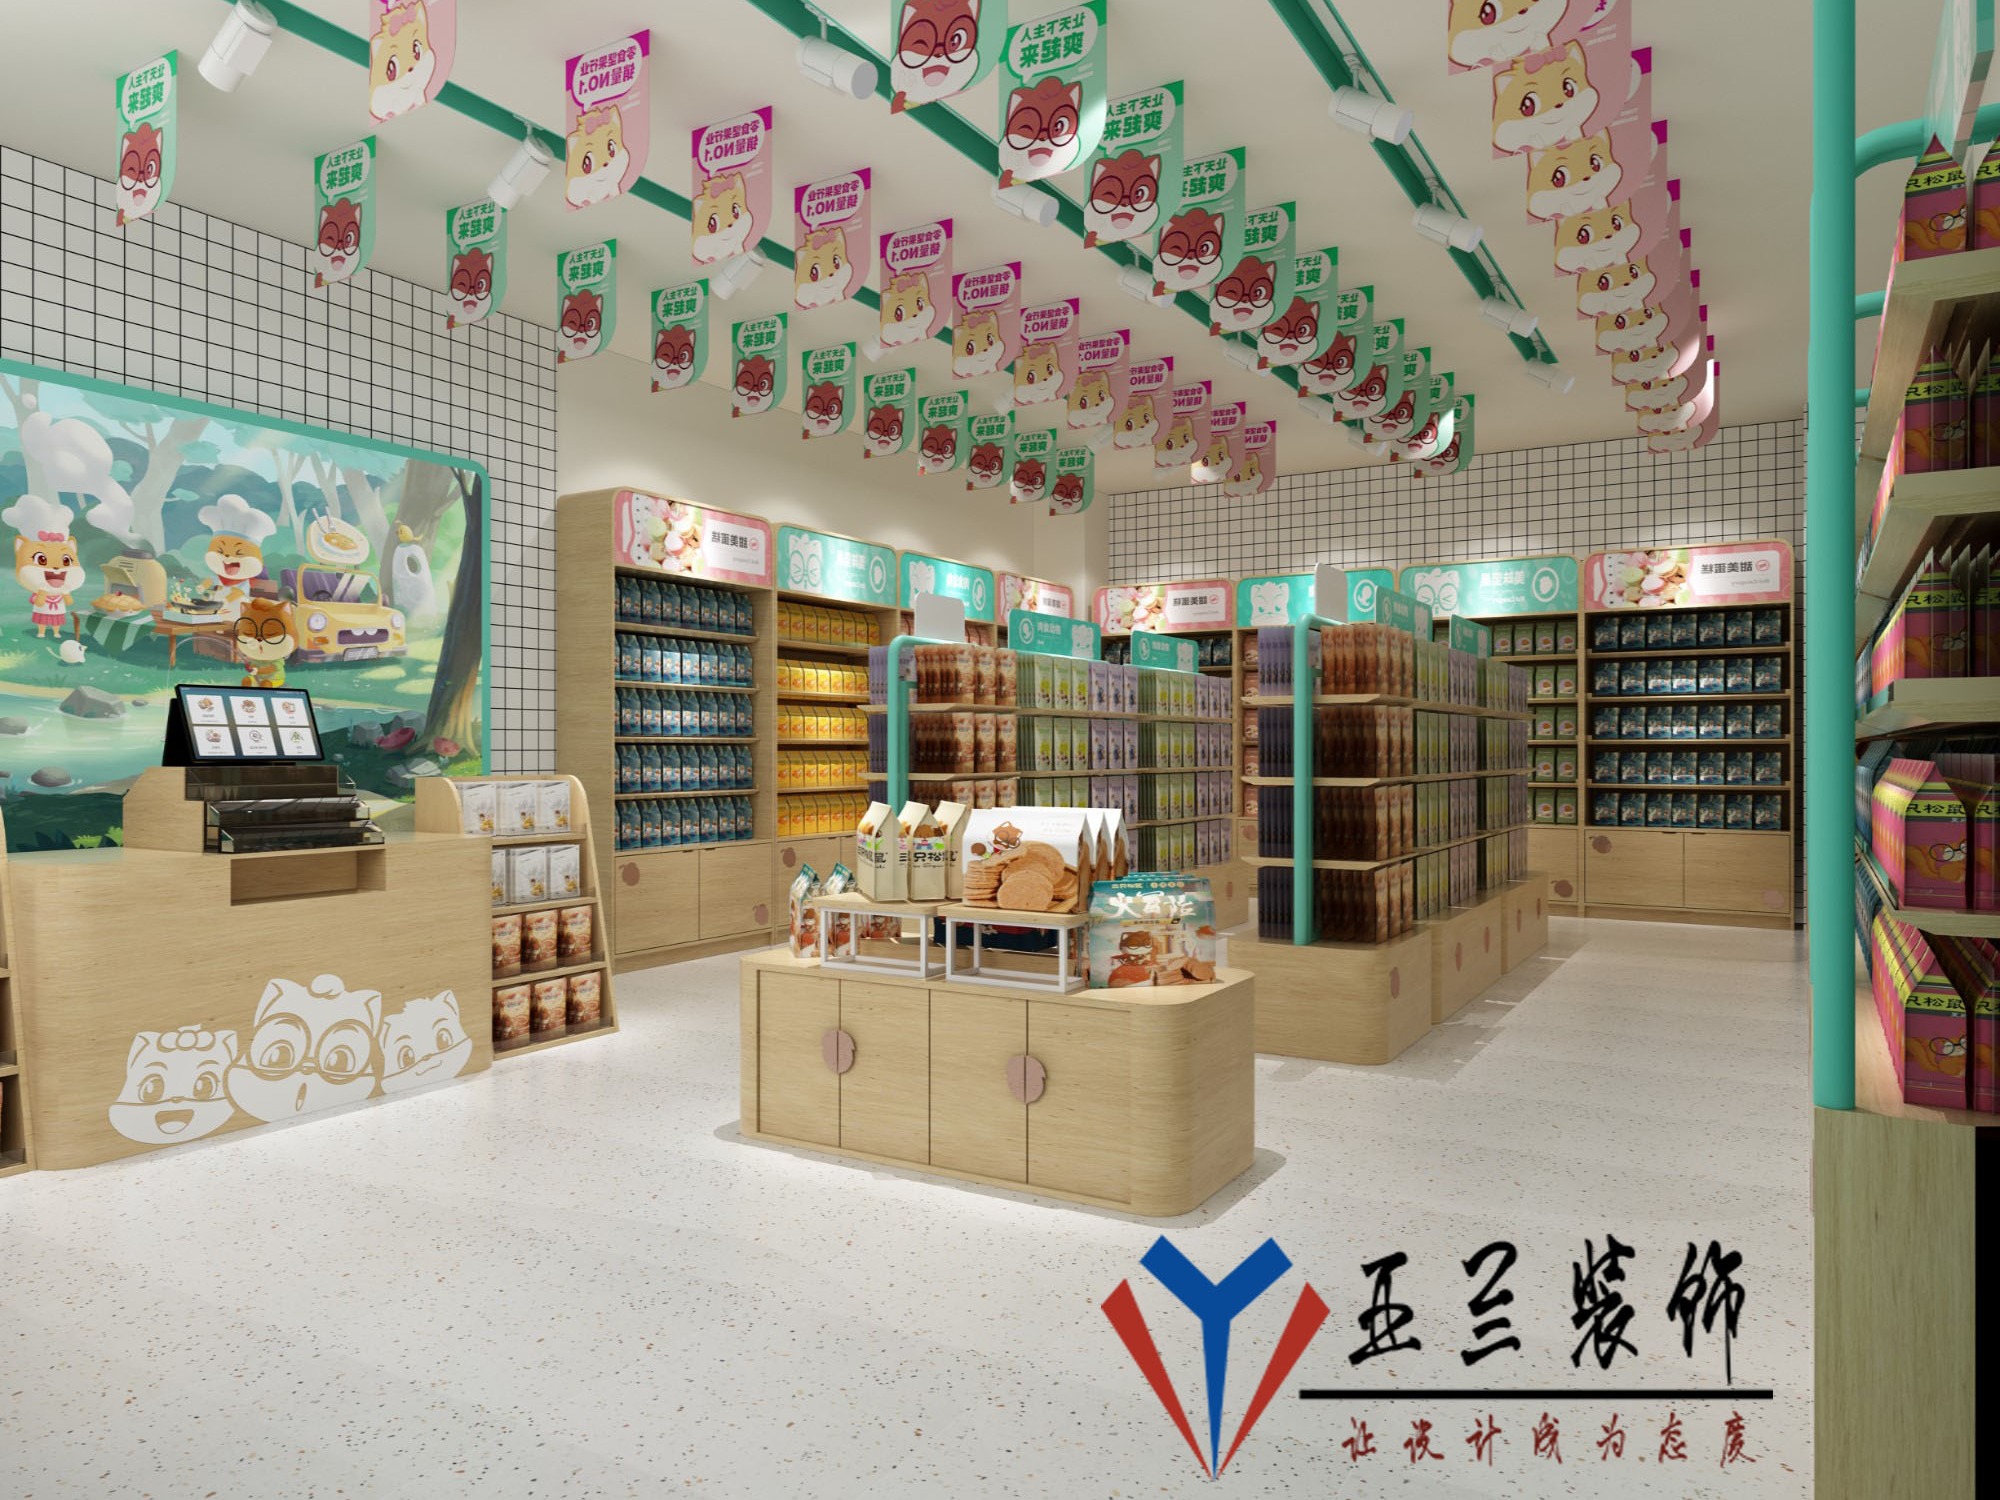 中式餐厅装修效果图现代格子铺装饰墙搭配中国山水画优雅实用的一款设计_蛙客网viwik.com